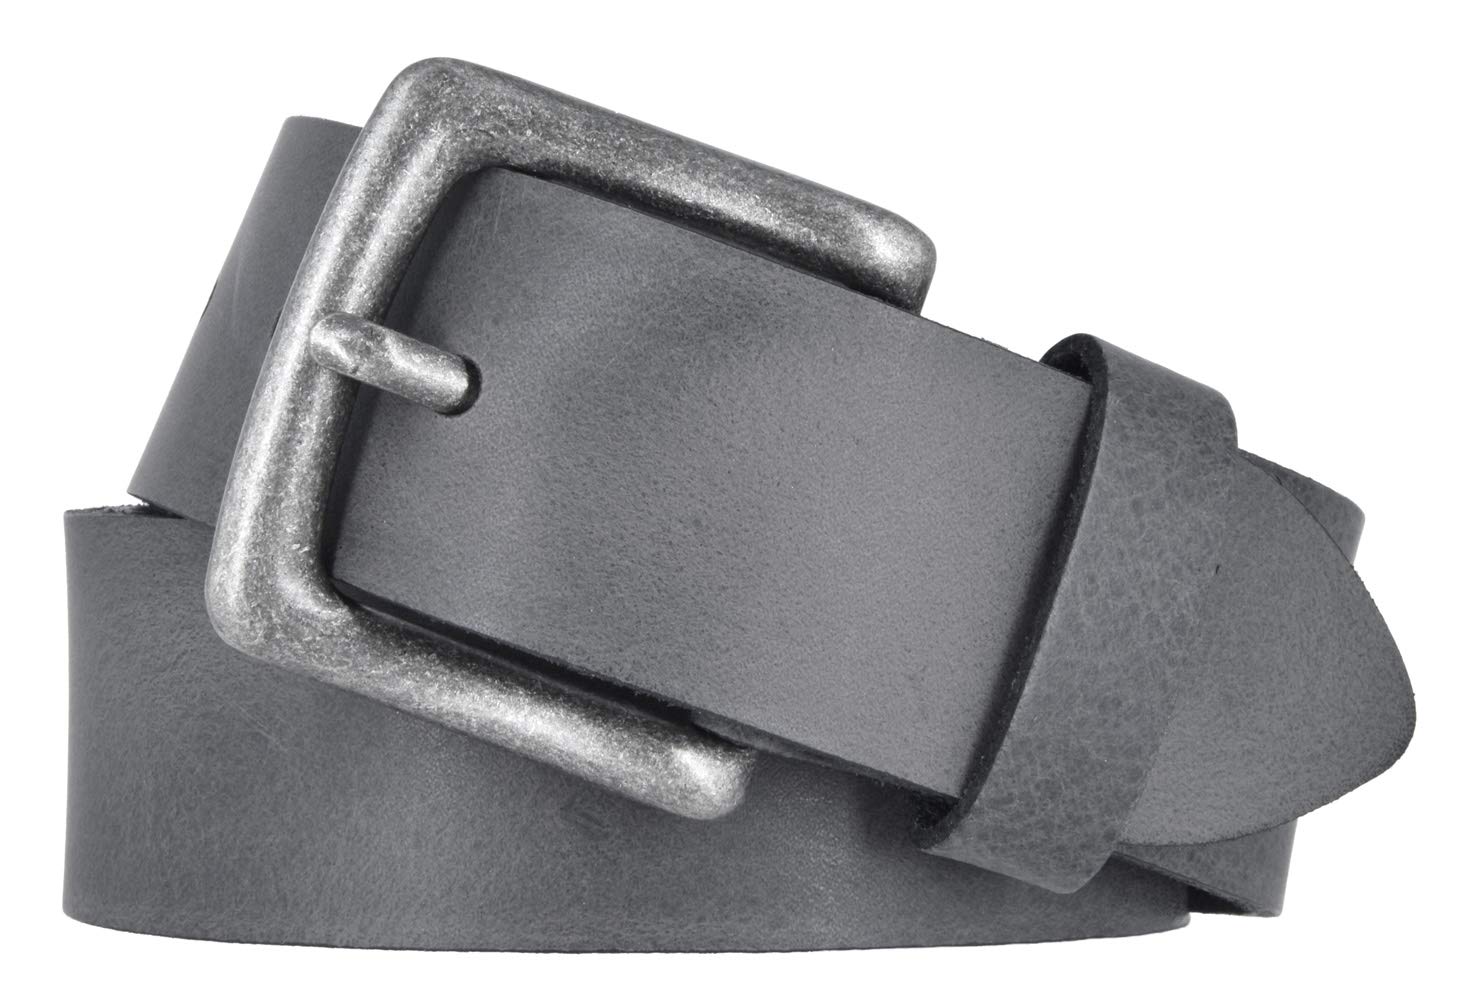 Mytem-Gear Leder Gürtel 4 cm Jeansgürtel Ledergürtel Herren und Damen kürzbar (110 cm, Grau (Ledergürtelschlaufe))